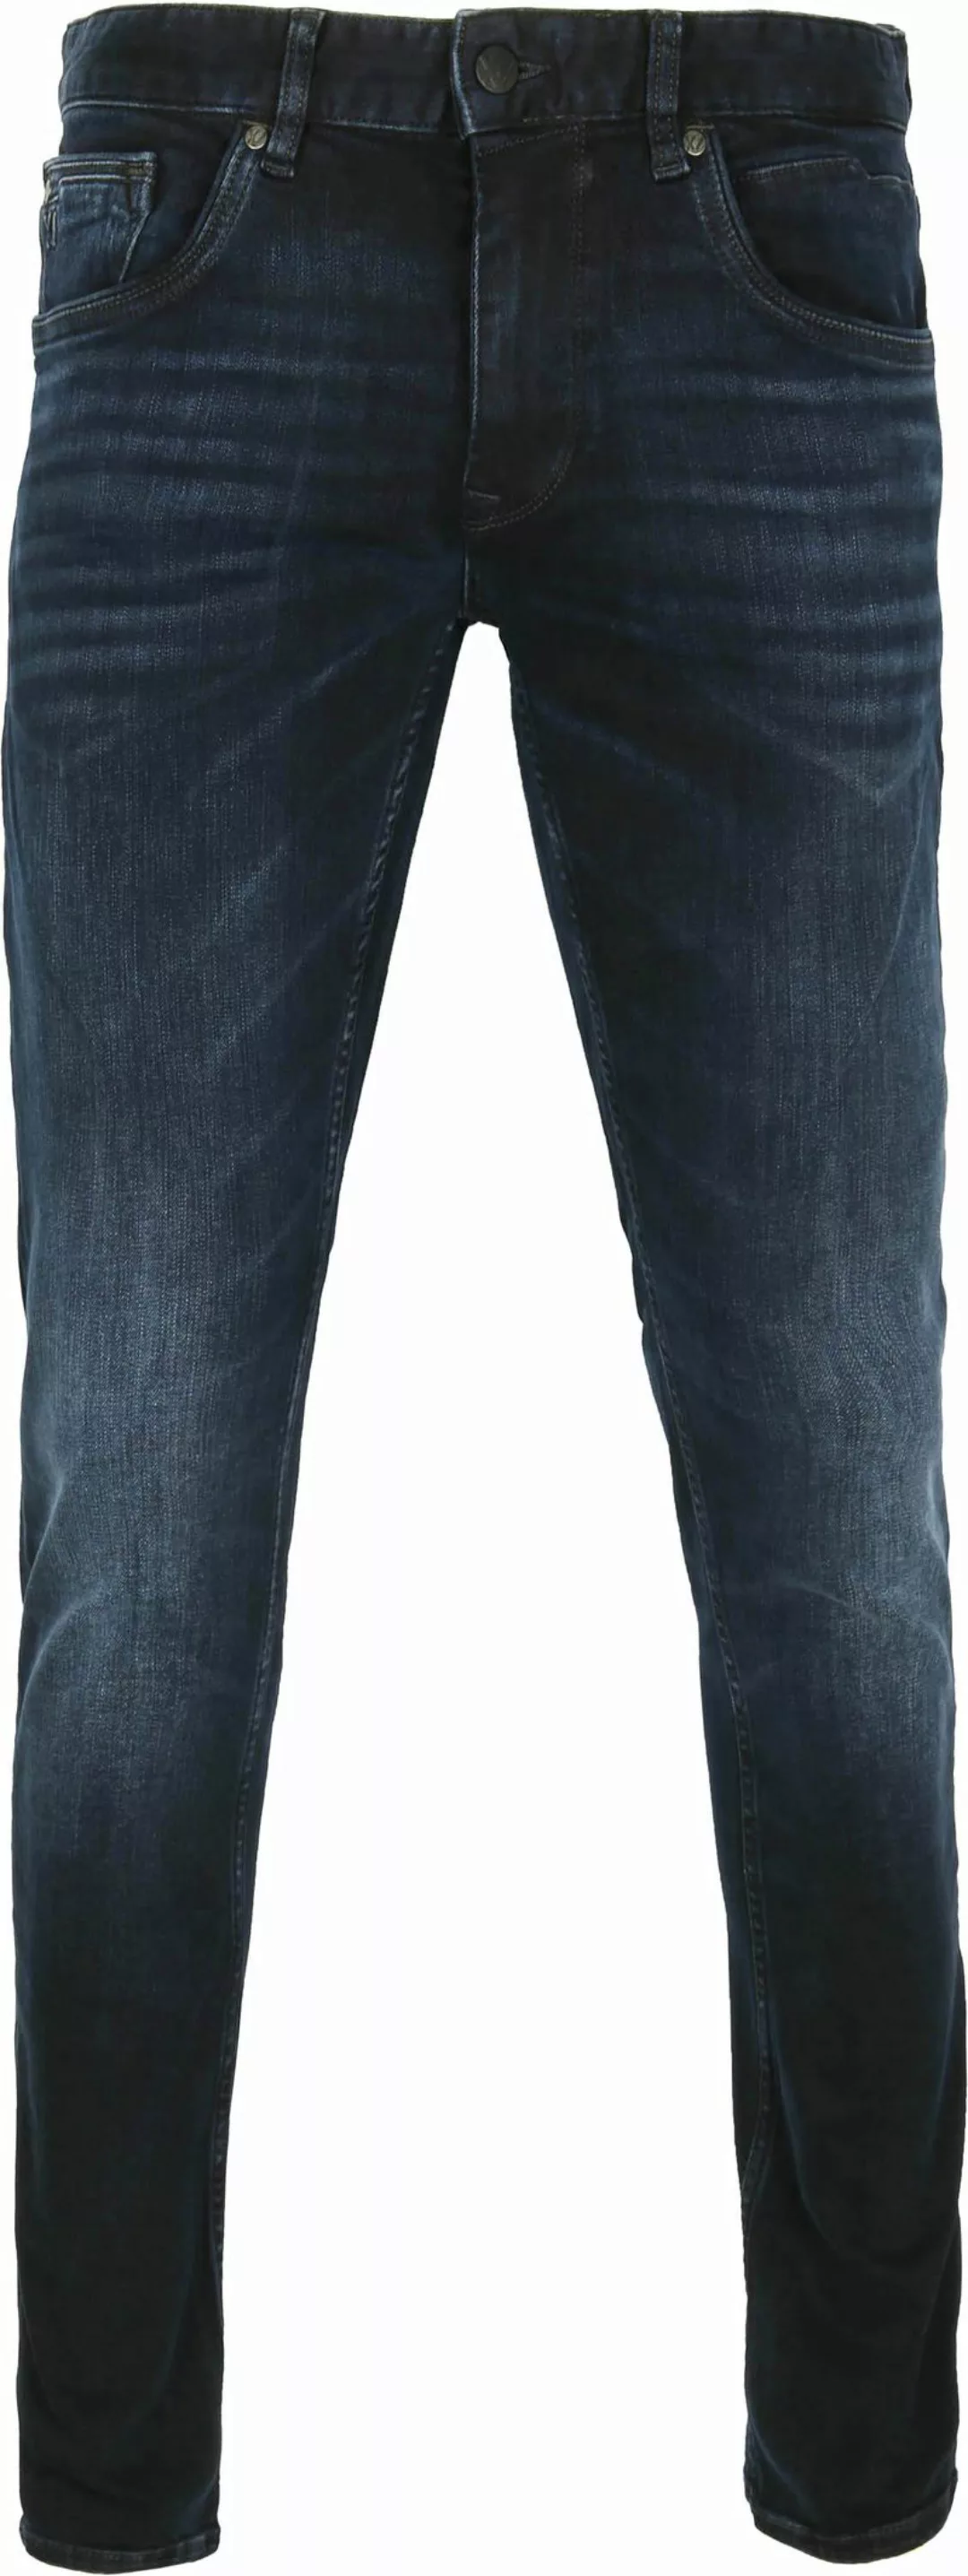 PME Legend XV Jeans Blue Black PTR150 - Größe W 31 - L 34 günstig online kaufen